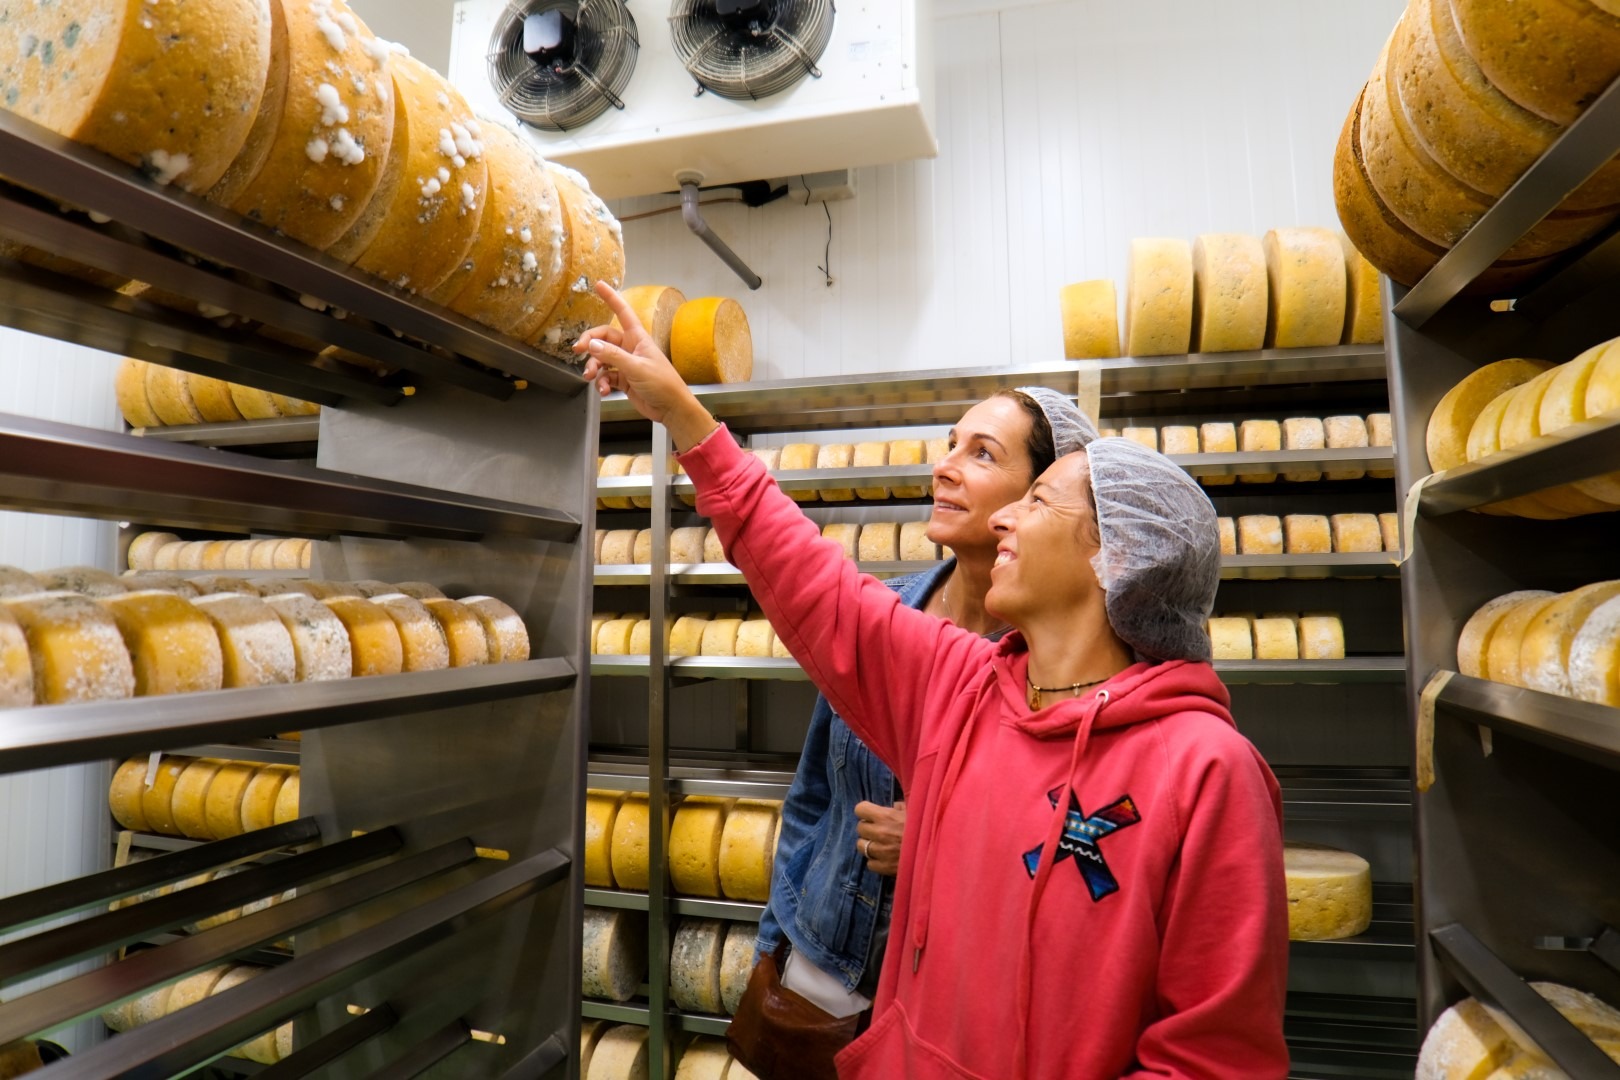  Dos chicas en un almacén de quesos.